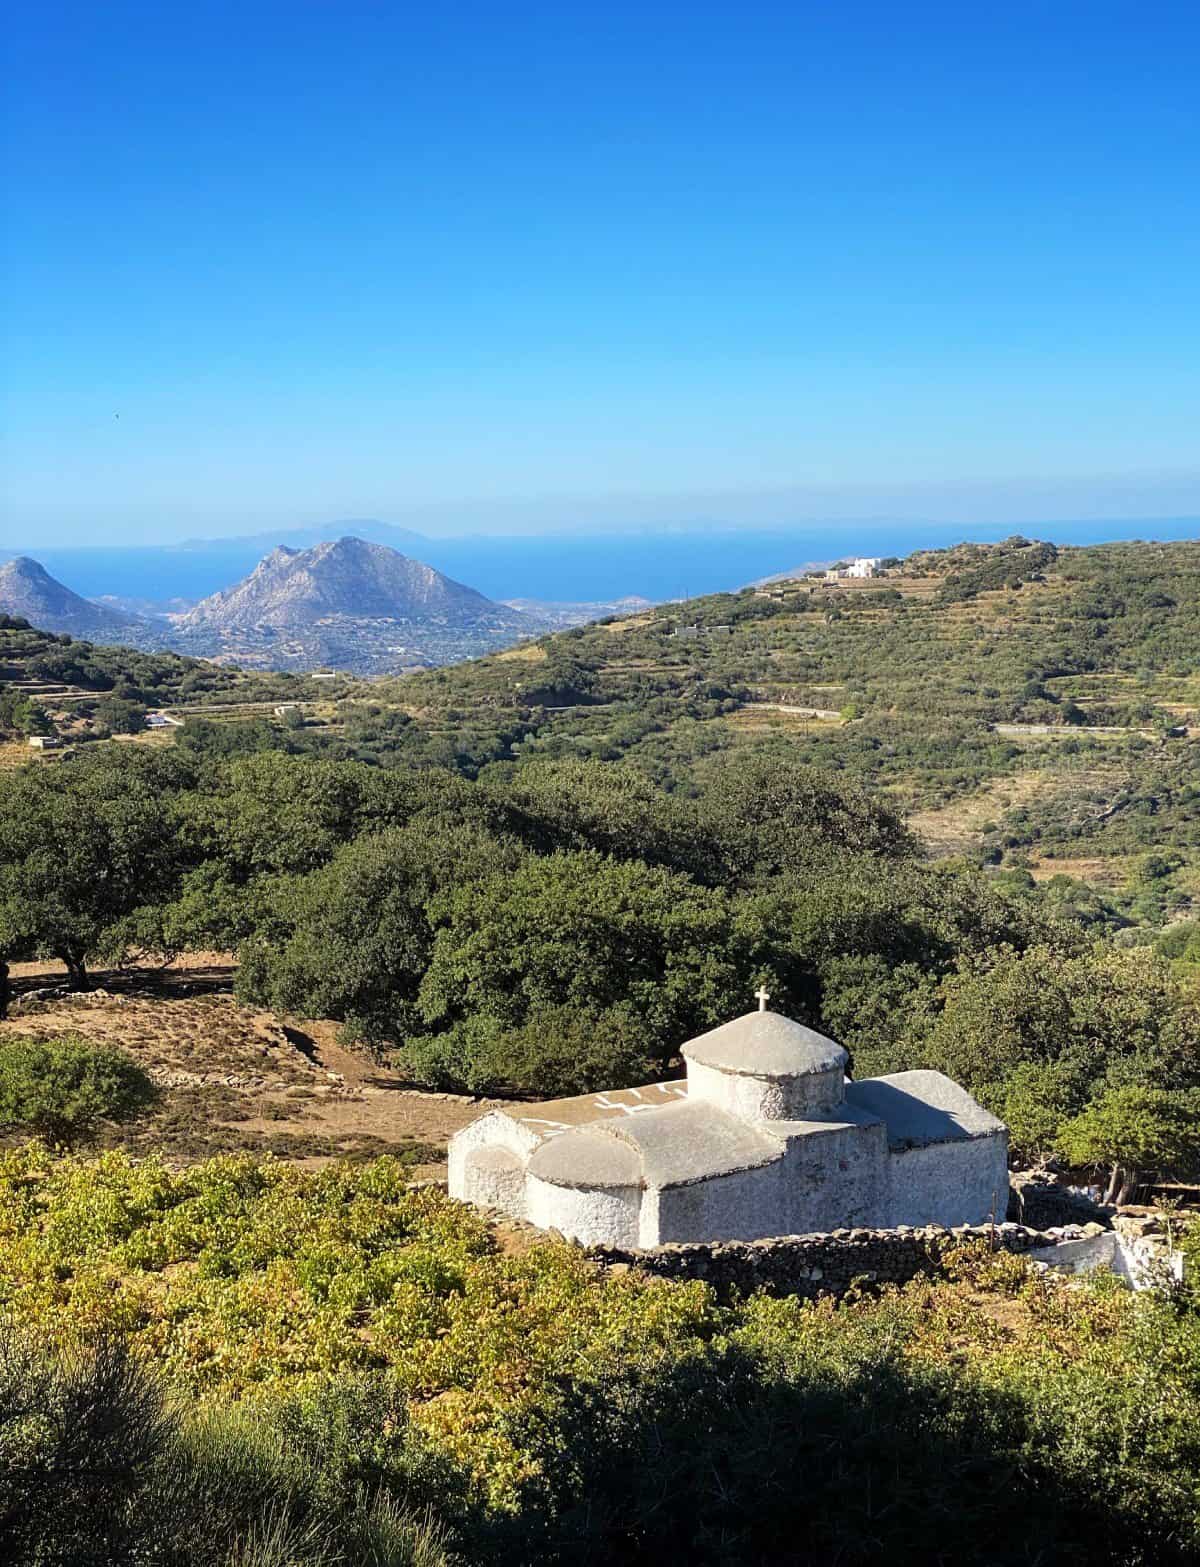 From Chalki to Filoti to Apiranthos, Naxos mountain villages are an amazing way to explore the island - enjoy the views!